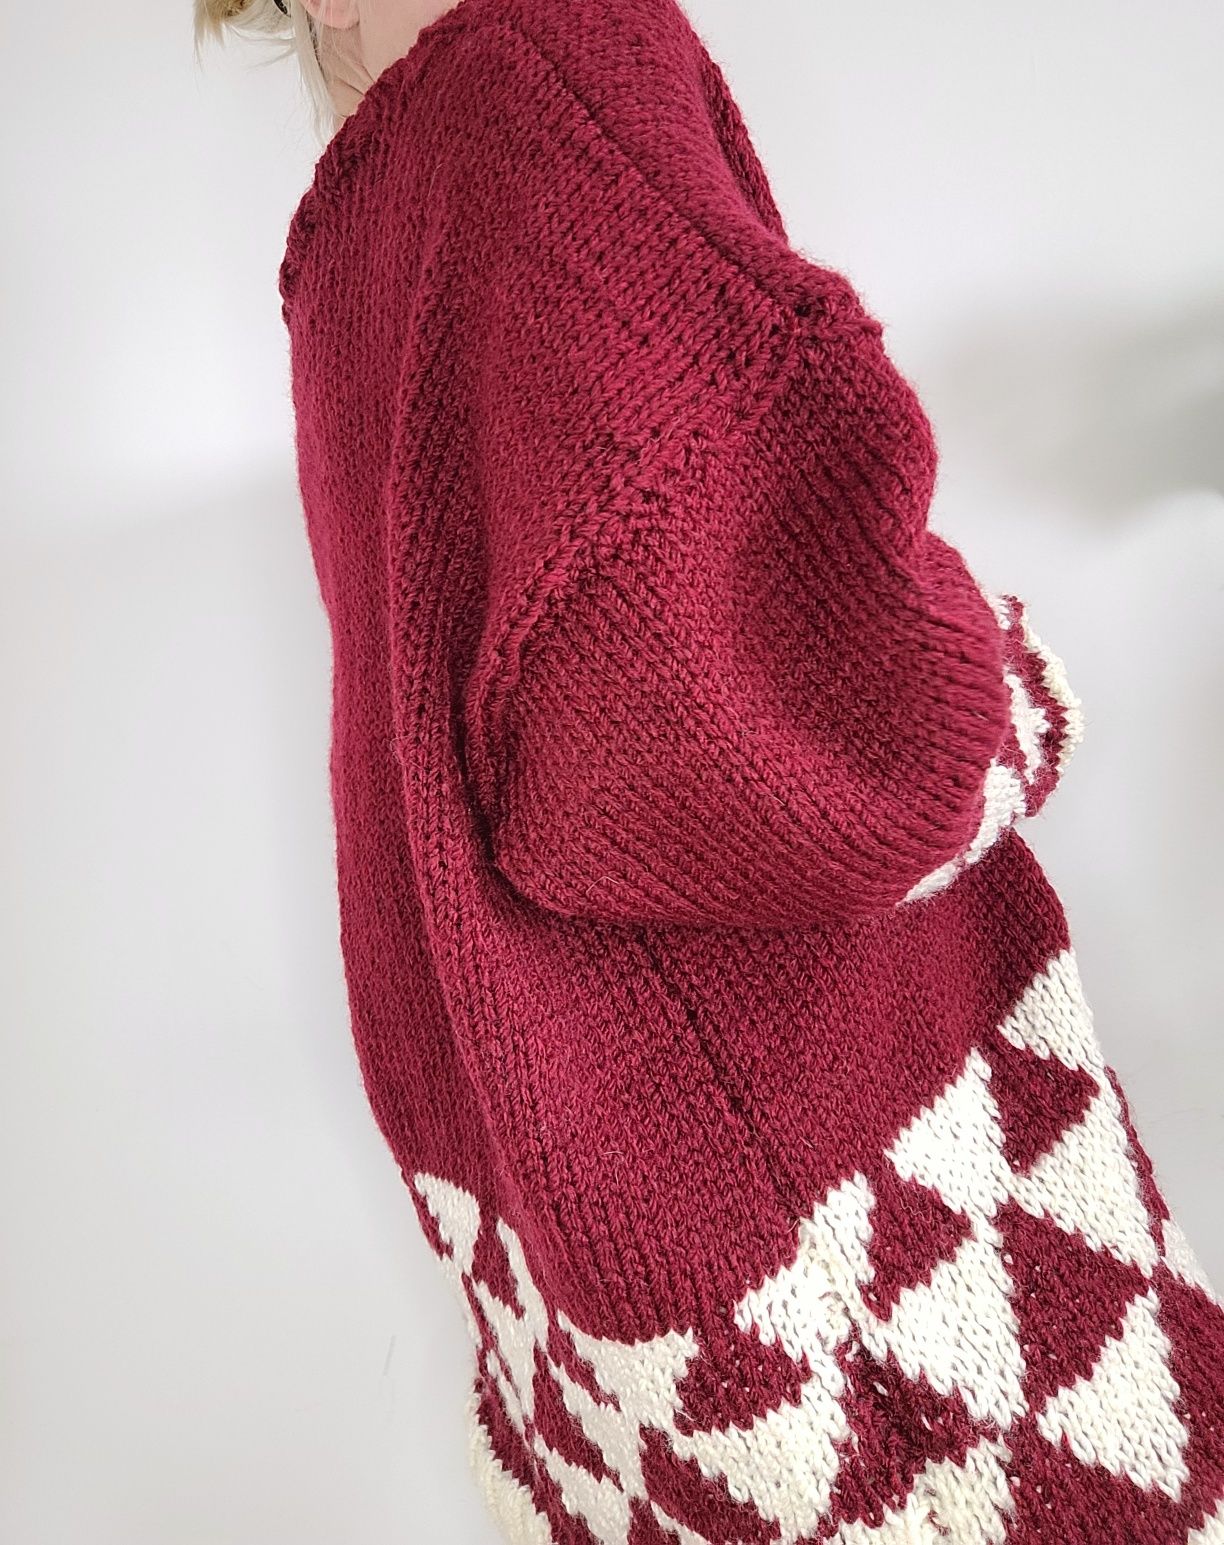 Gruby bordowy wełniany sweter oversize 100% wełna handmade